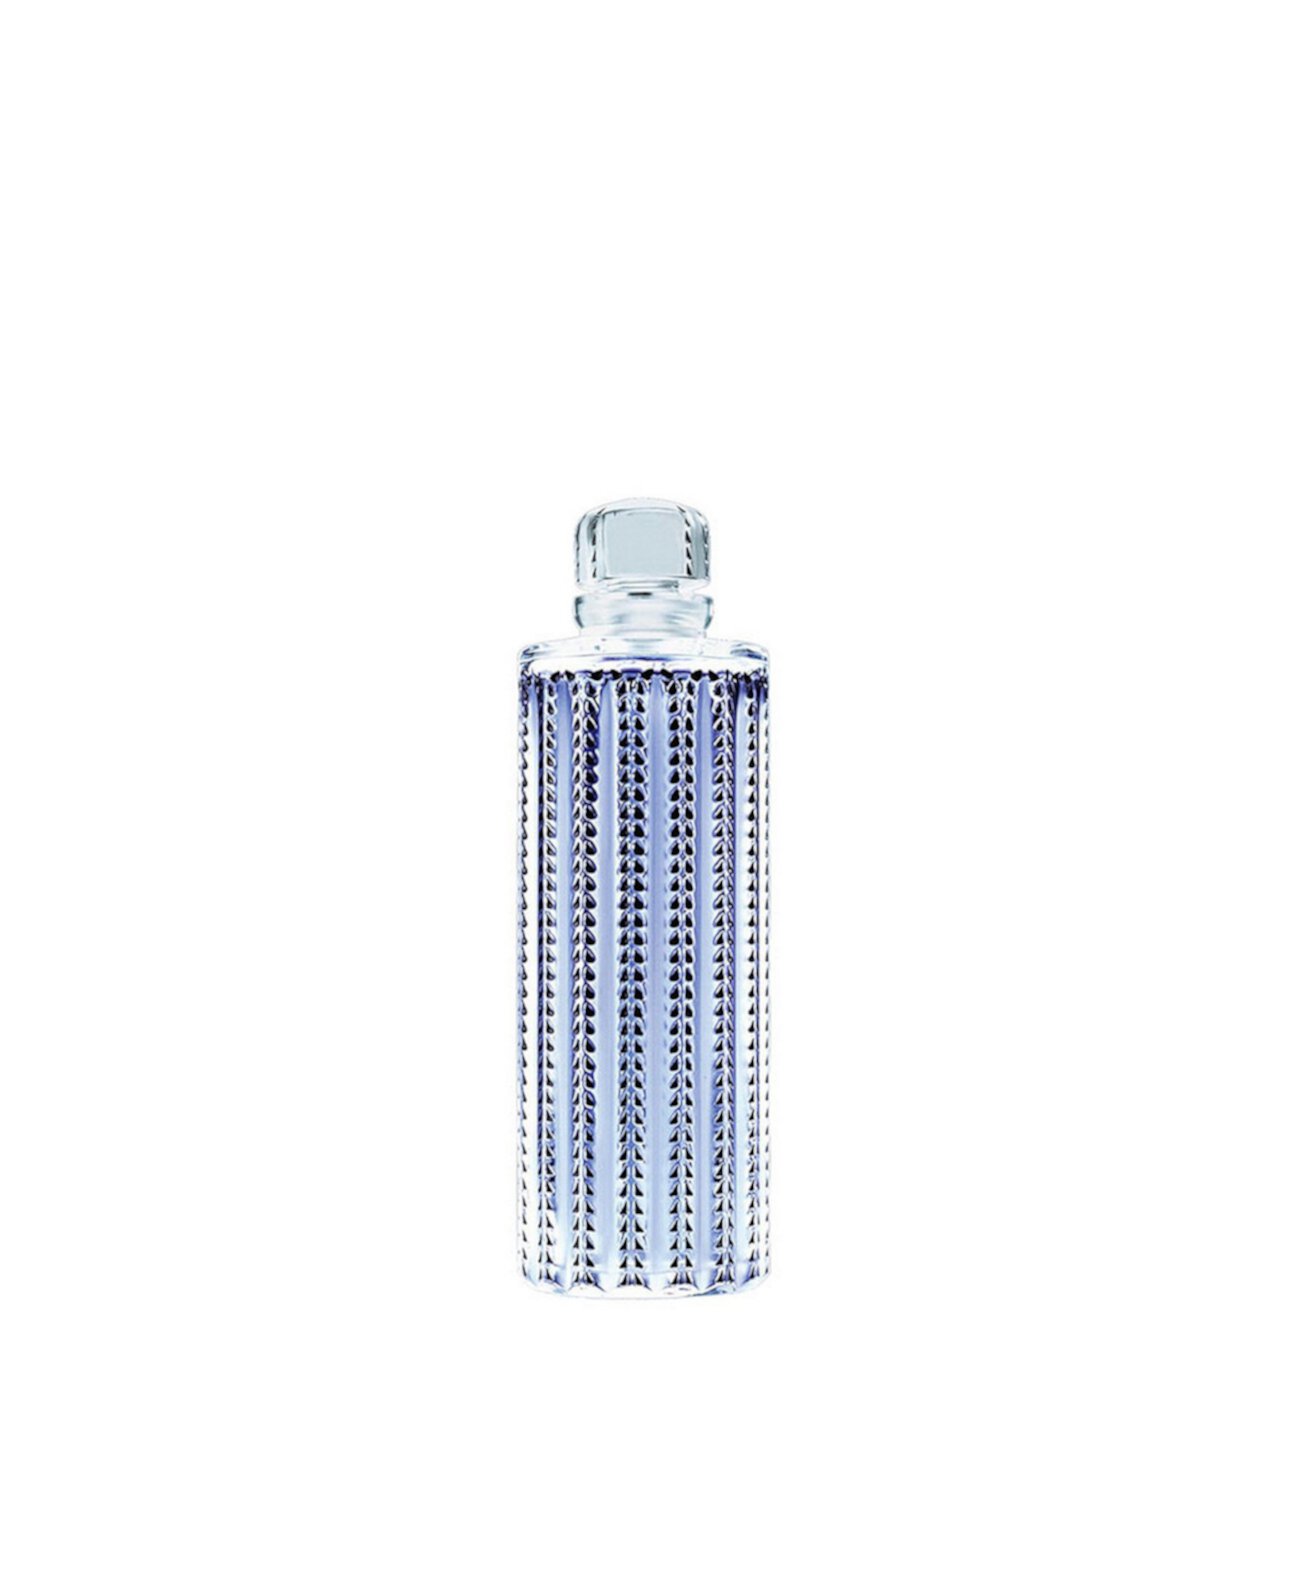 Парфюмированная вода Pour Homme 2007 Limited Edition Luxor Le Faunel Crystal, 7,7 унции Lalique